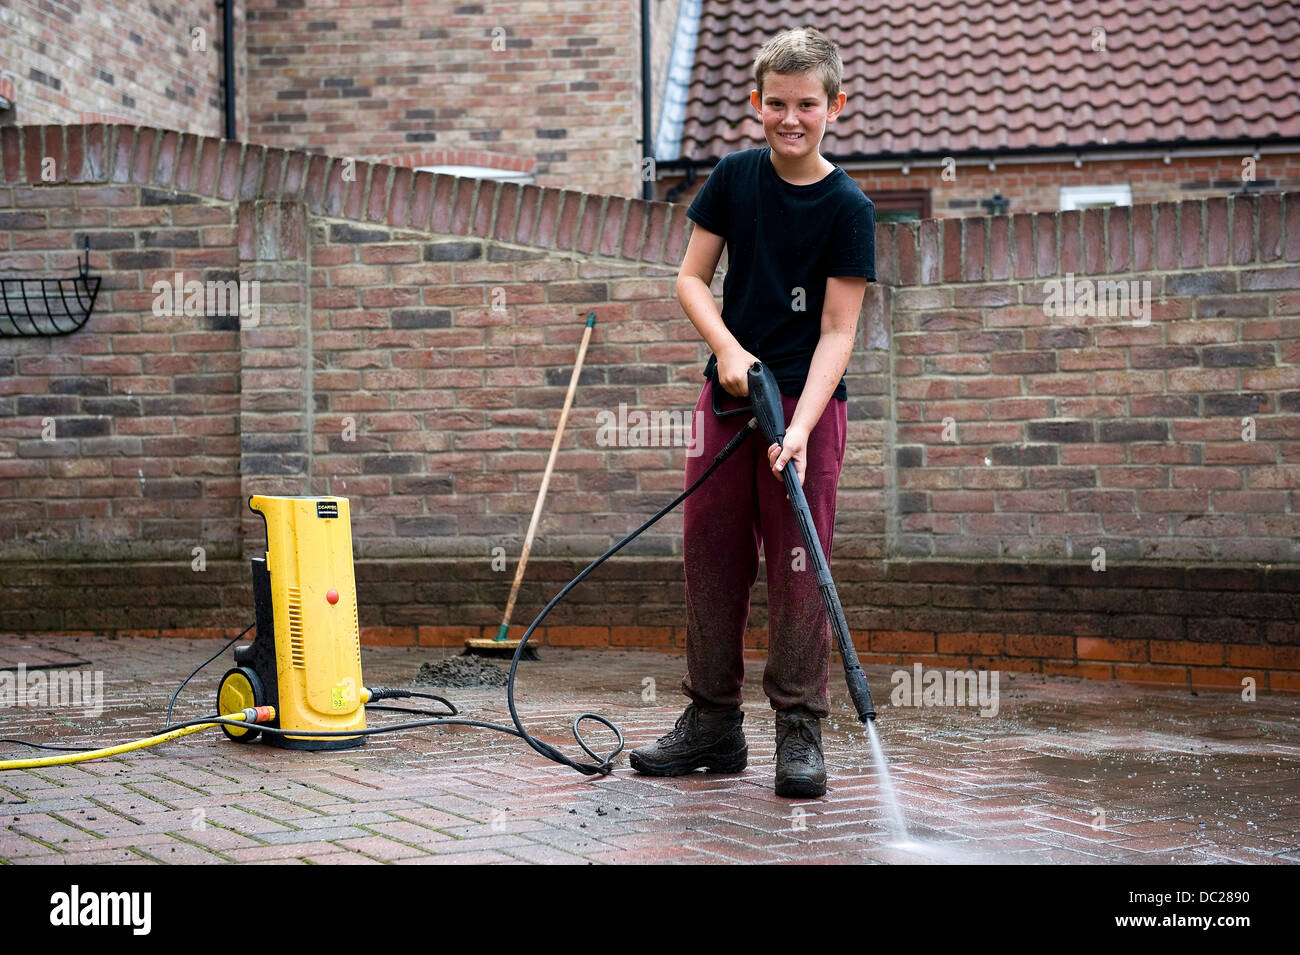 Un garçon de 13 ans utilise une rondelle de puissance pour nettoyer le bloc ouvrir dur à son domicile pour obtenir de l'argent de poche. Banque D'Images